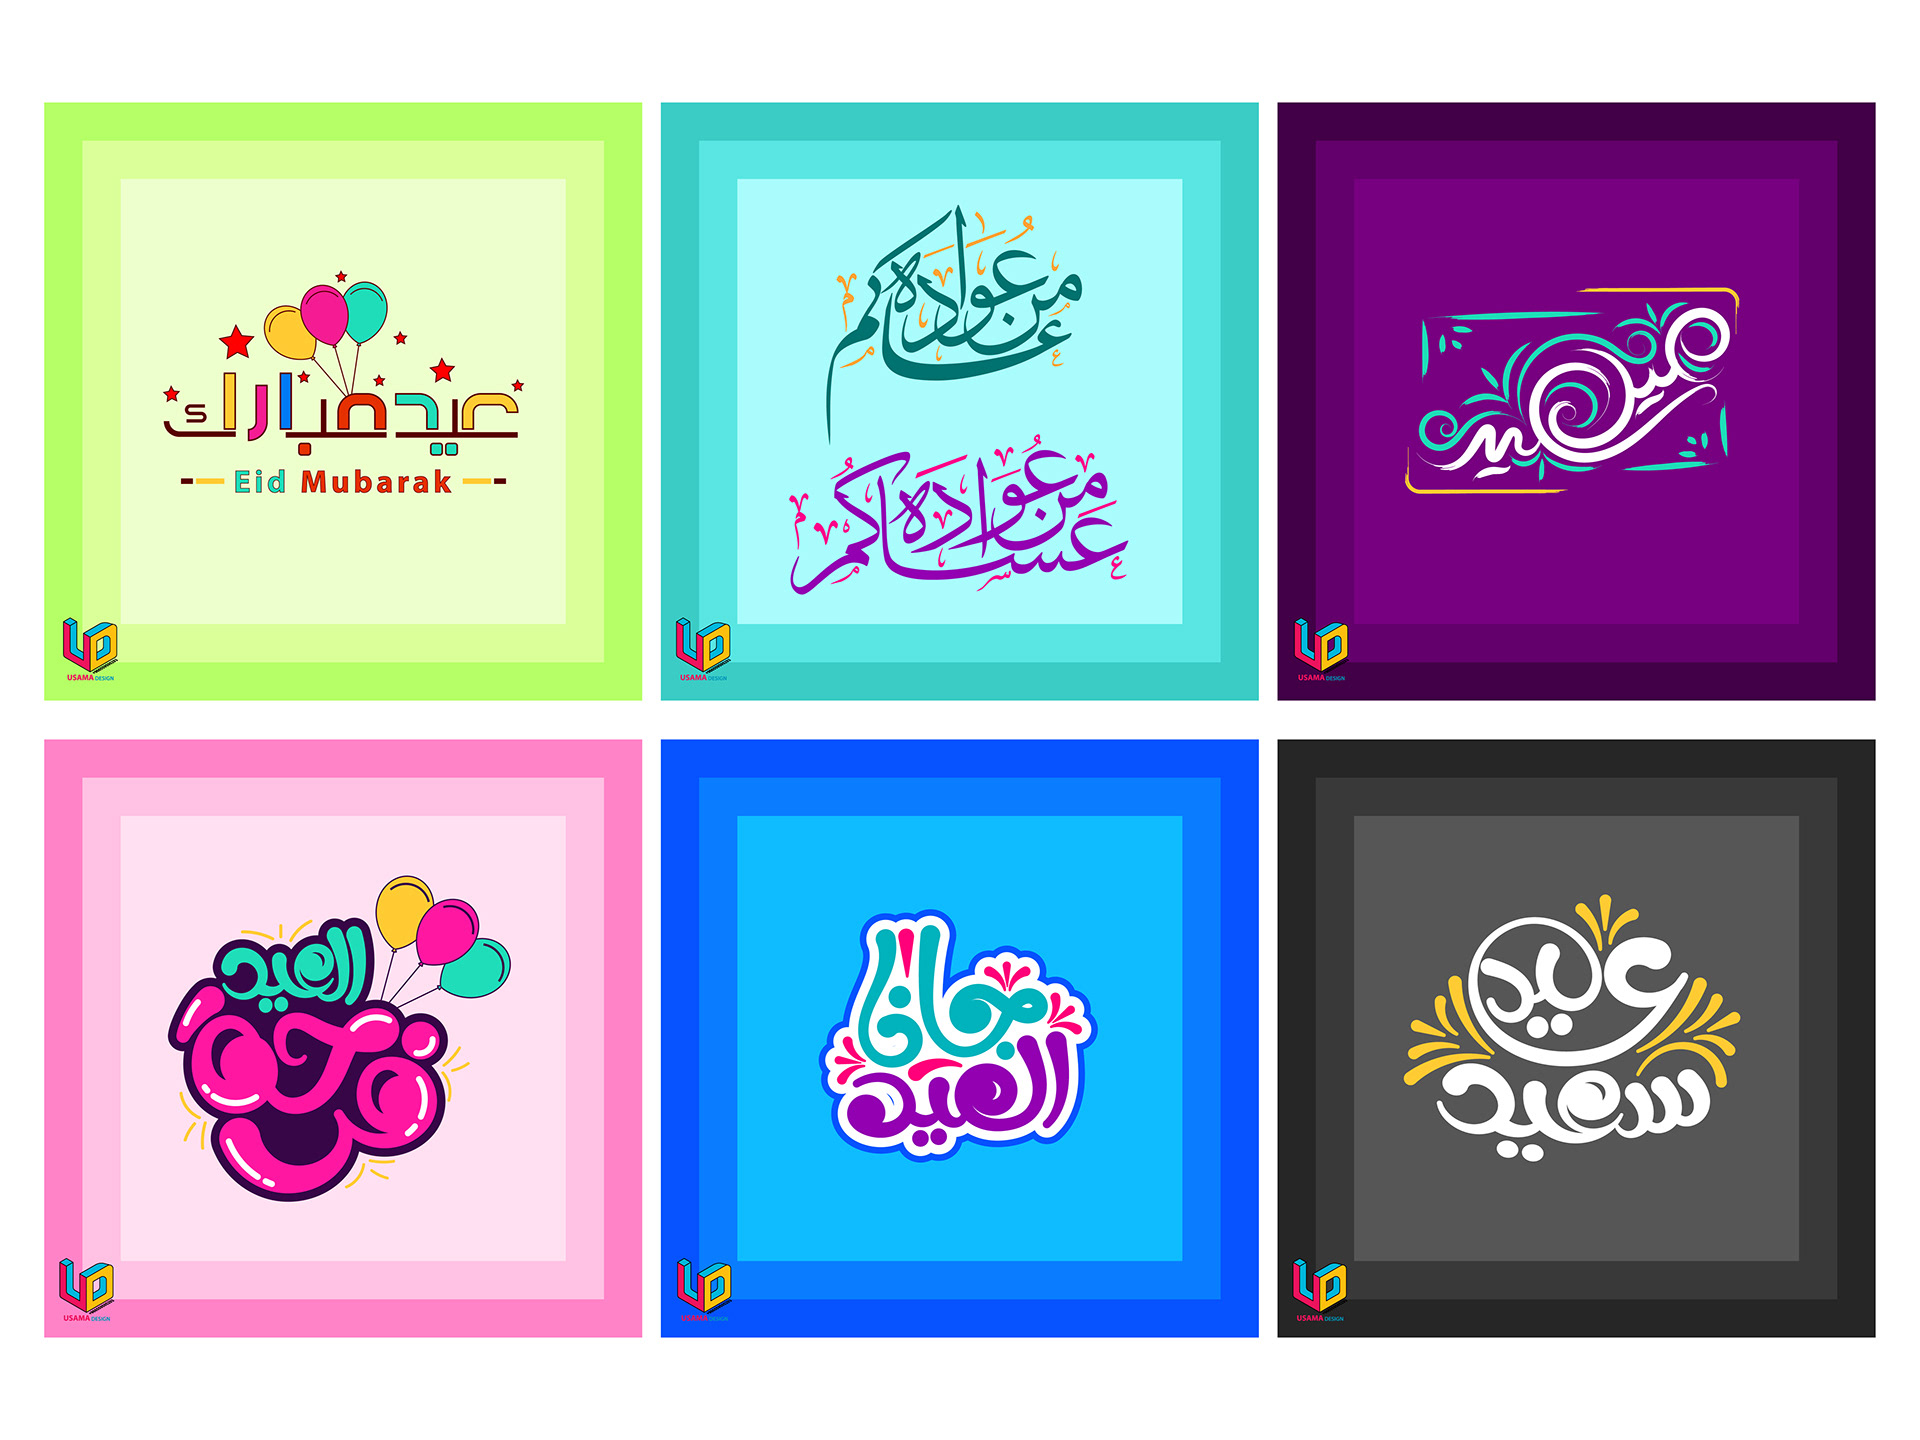 مجموعة 6 مخطوطات العيد ملونة رائعة جرافيكس العرب كل ما تحتاج لتكون مبدع ملتقى المصممين